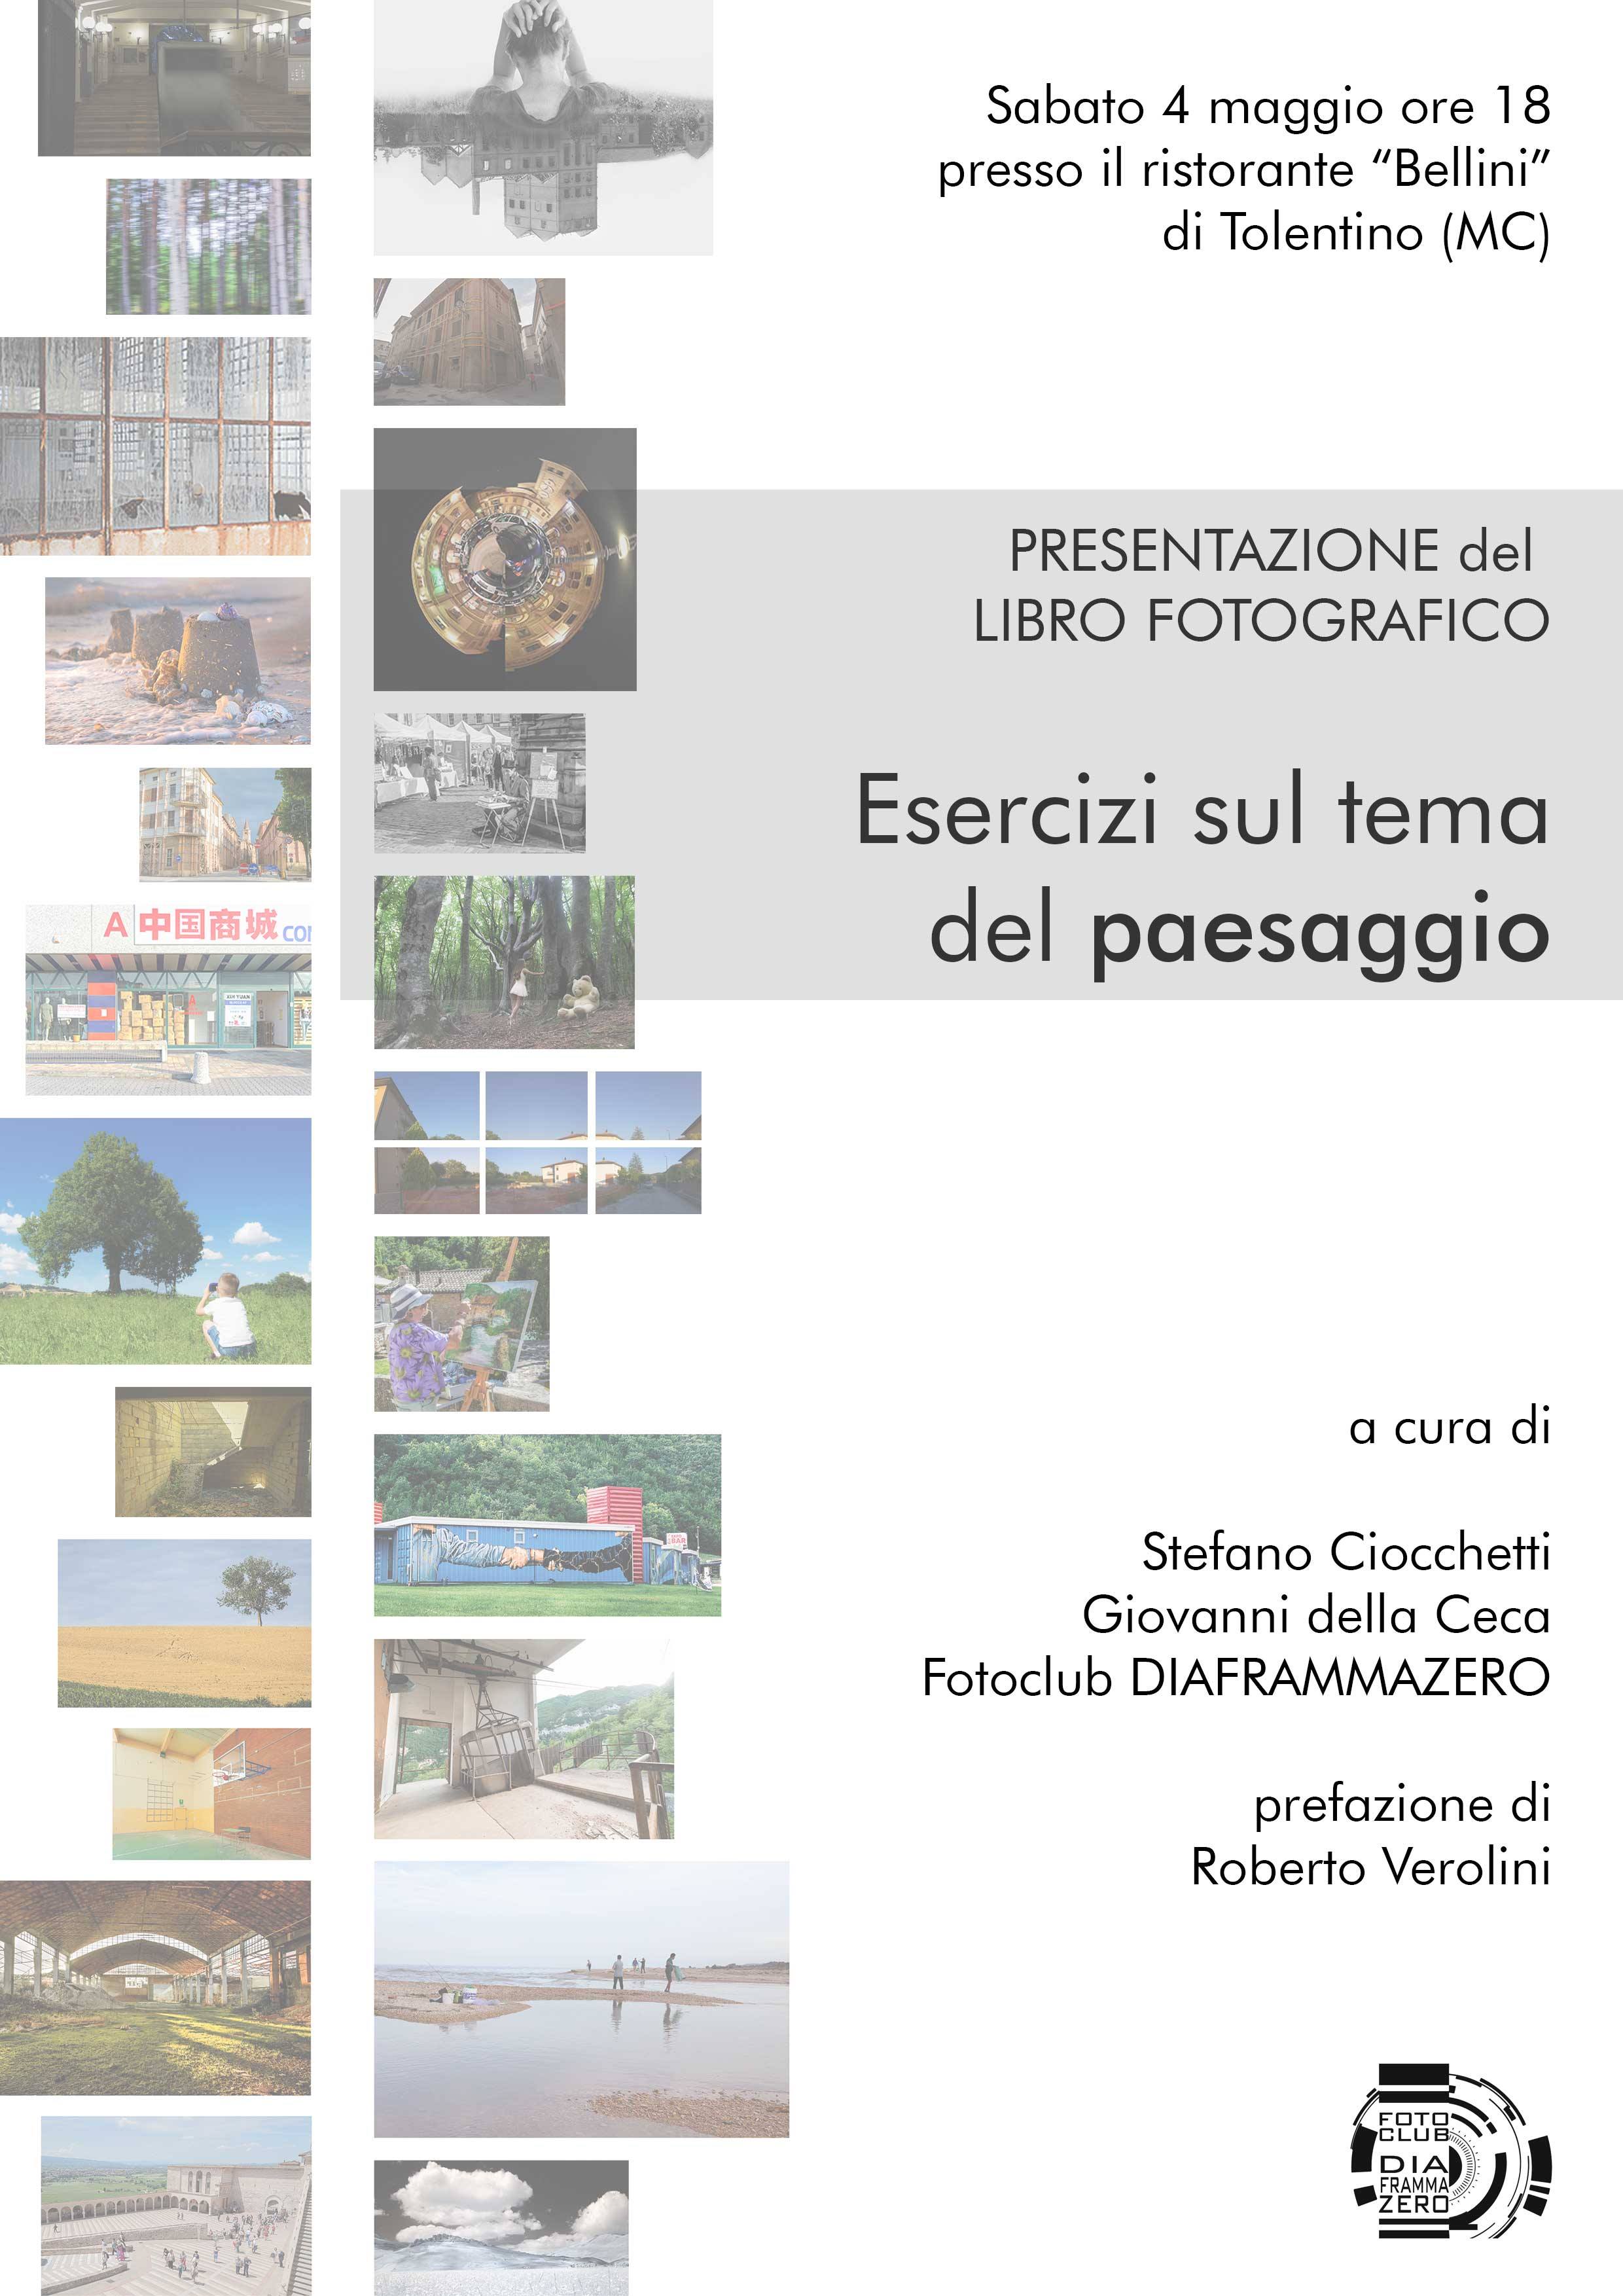 Presentazione Libro Fotografico - Il paesaggio